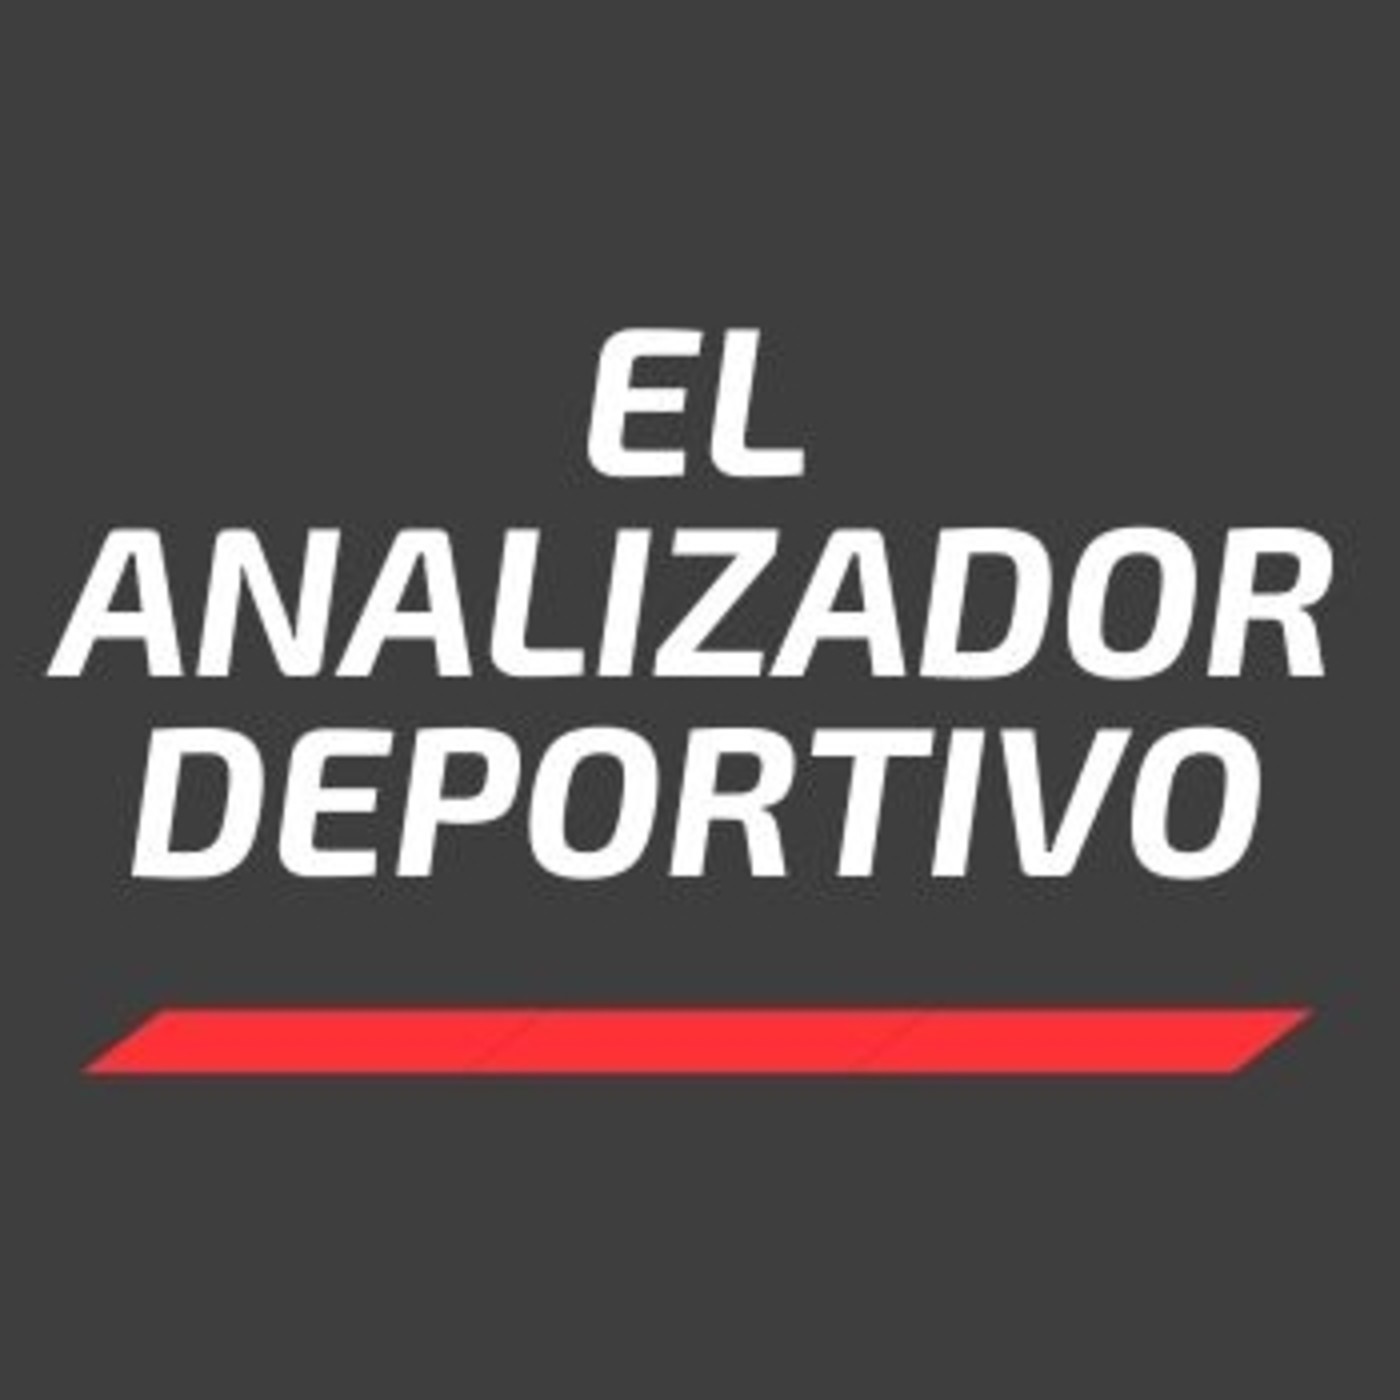 EL ANALIZADOR DEPORTIVO